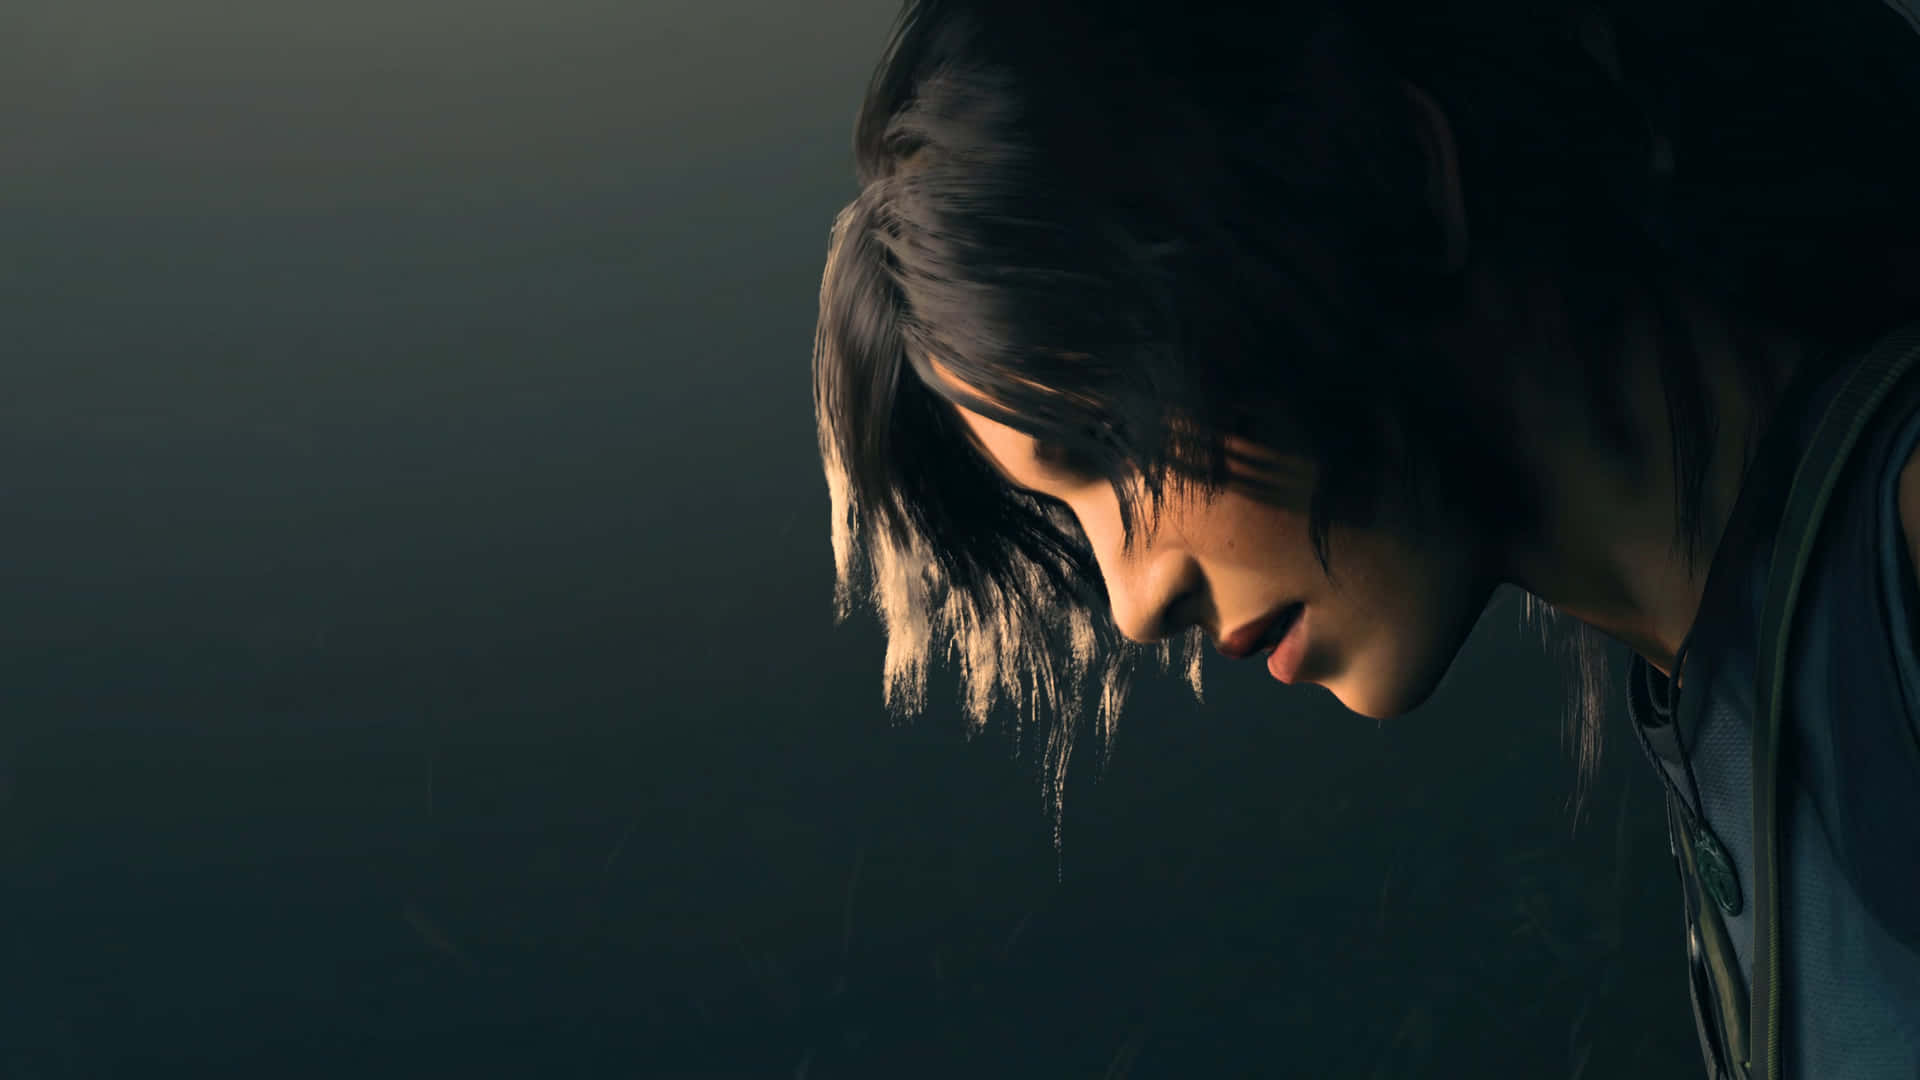 Lara Croft på hendes næste dristige mission i Skyggen af Tomb Raider. Wallpaper